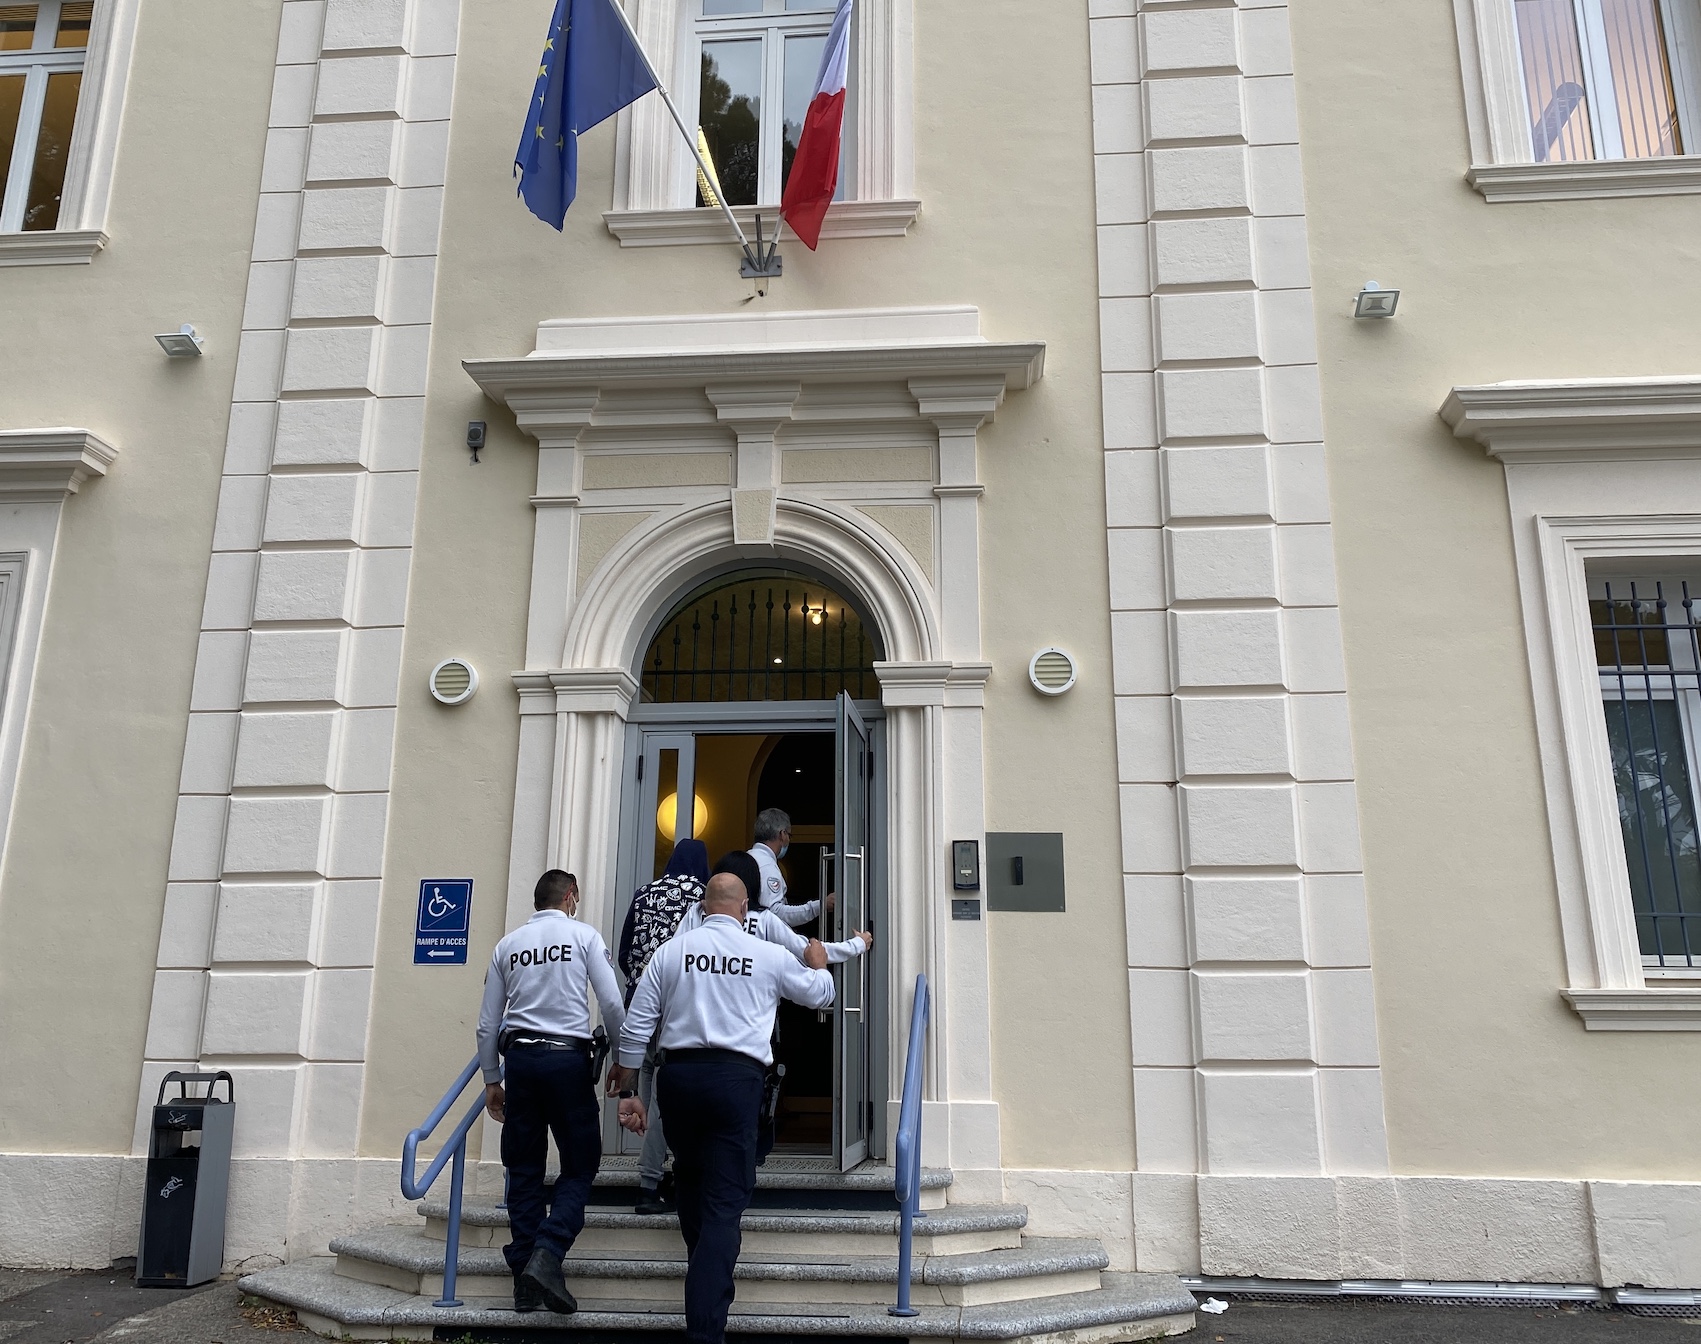 Homme arrêté avec un "katana" à Ajaccio : le tribunal administratif de Bastia annule son expulsion